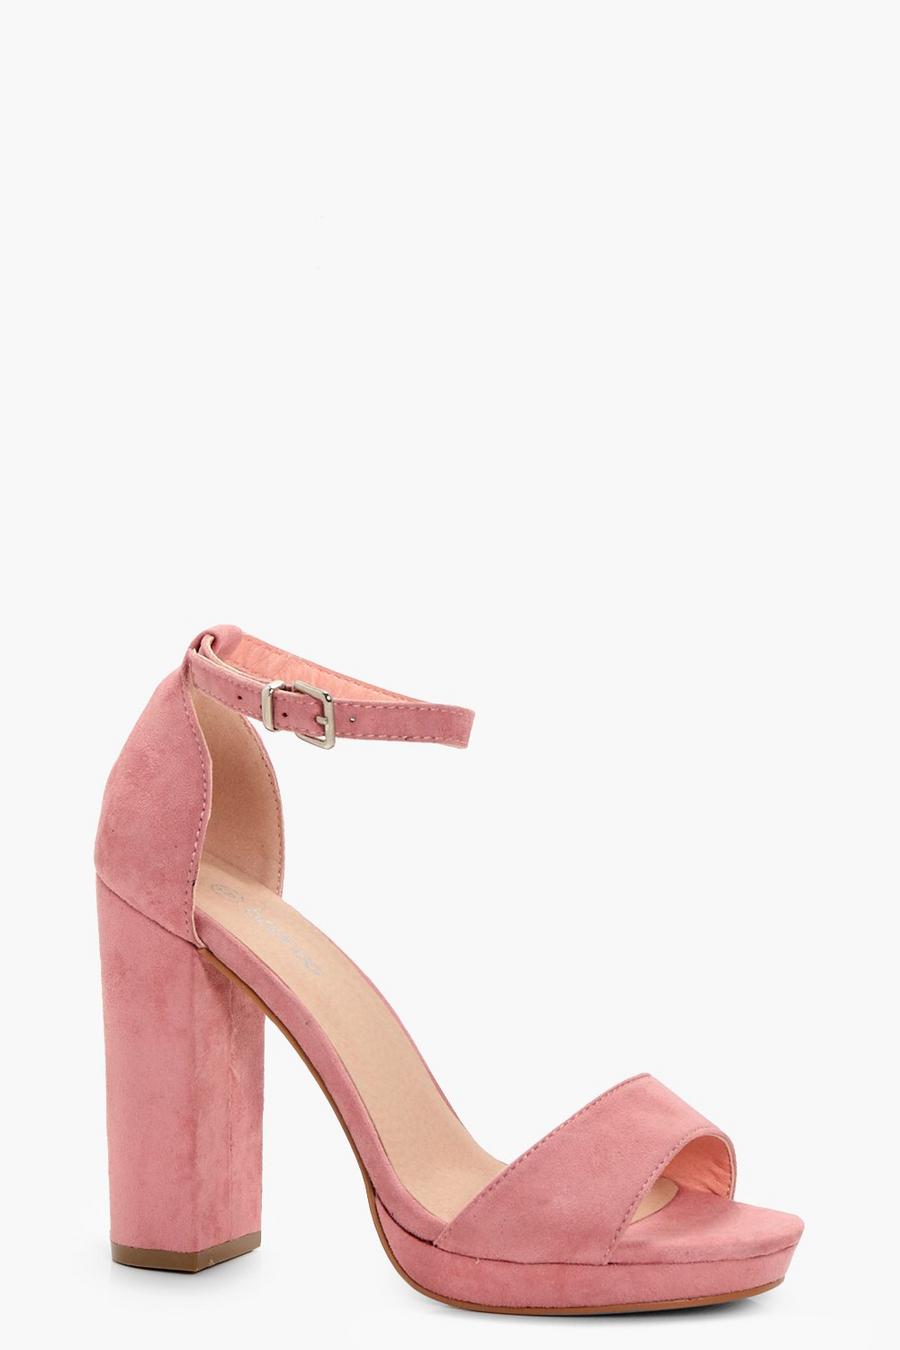 Blush pink Wide Width Platform Block Heels image number 1